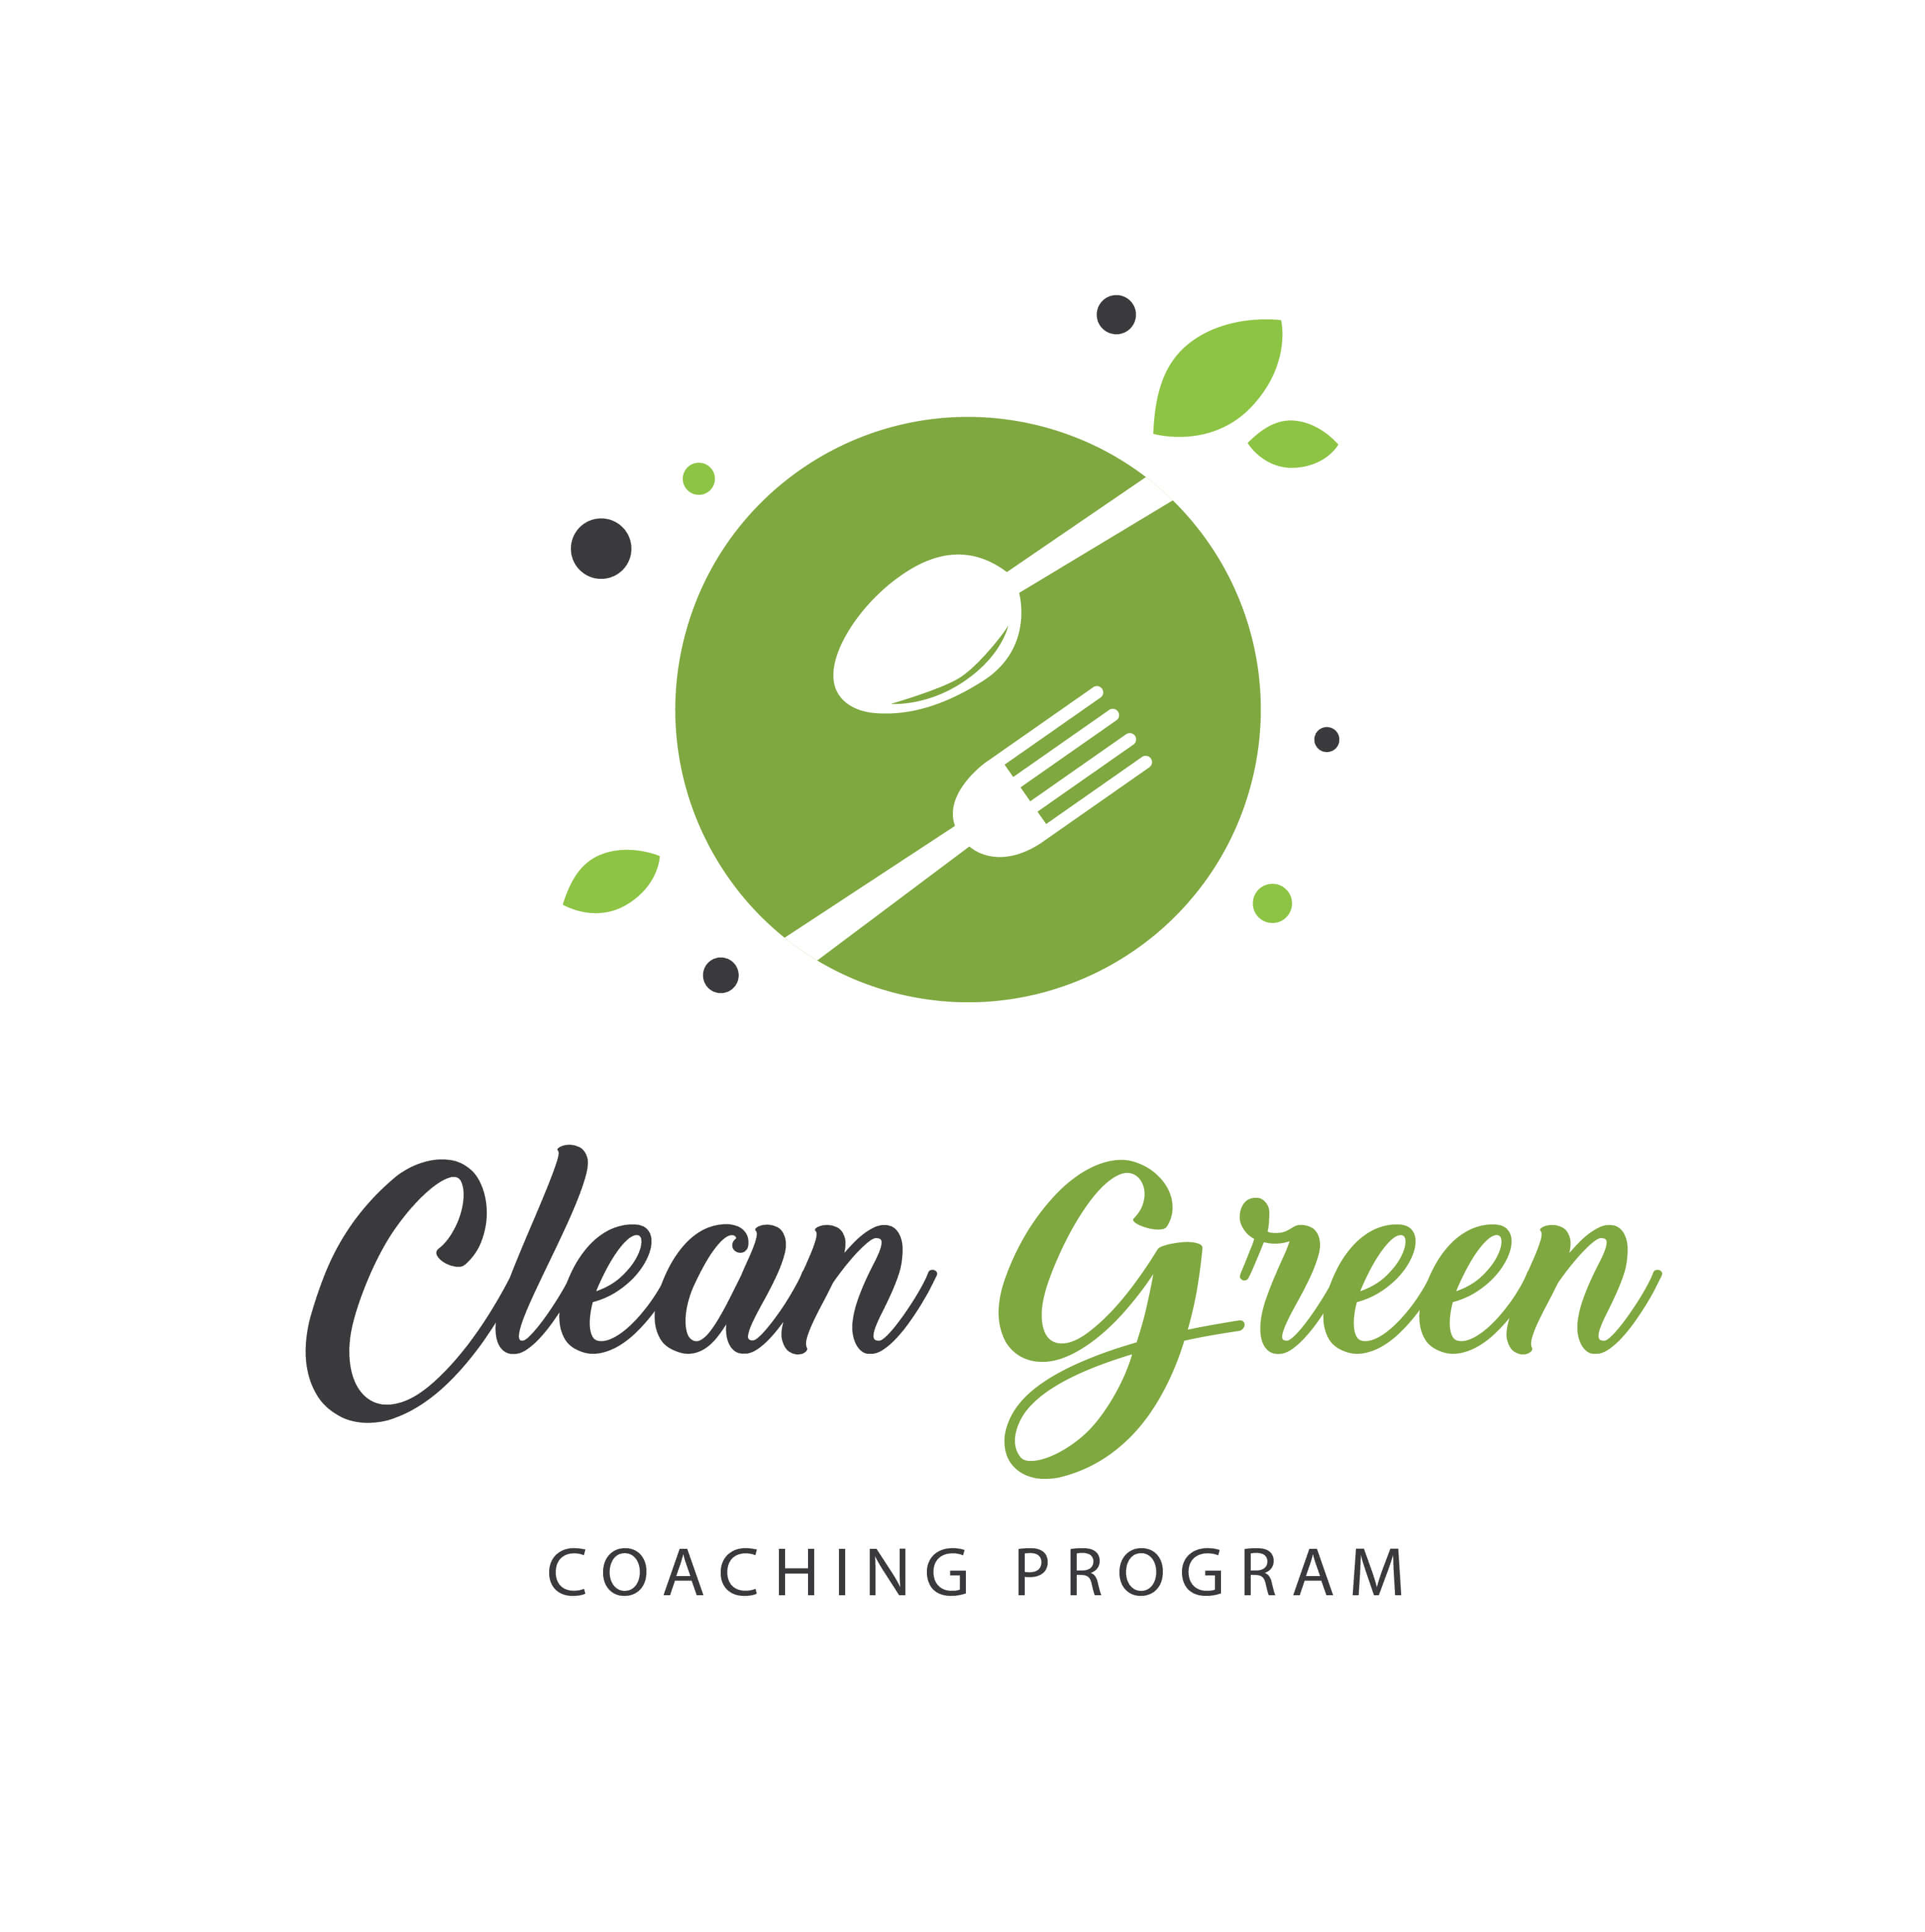 Clean Green Coaching Program